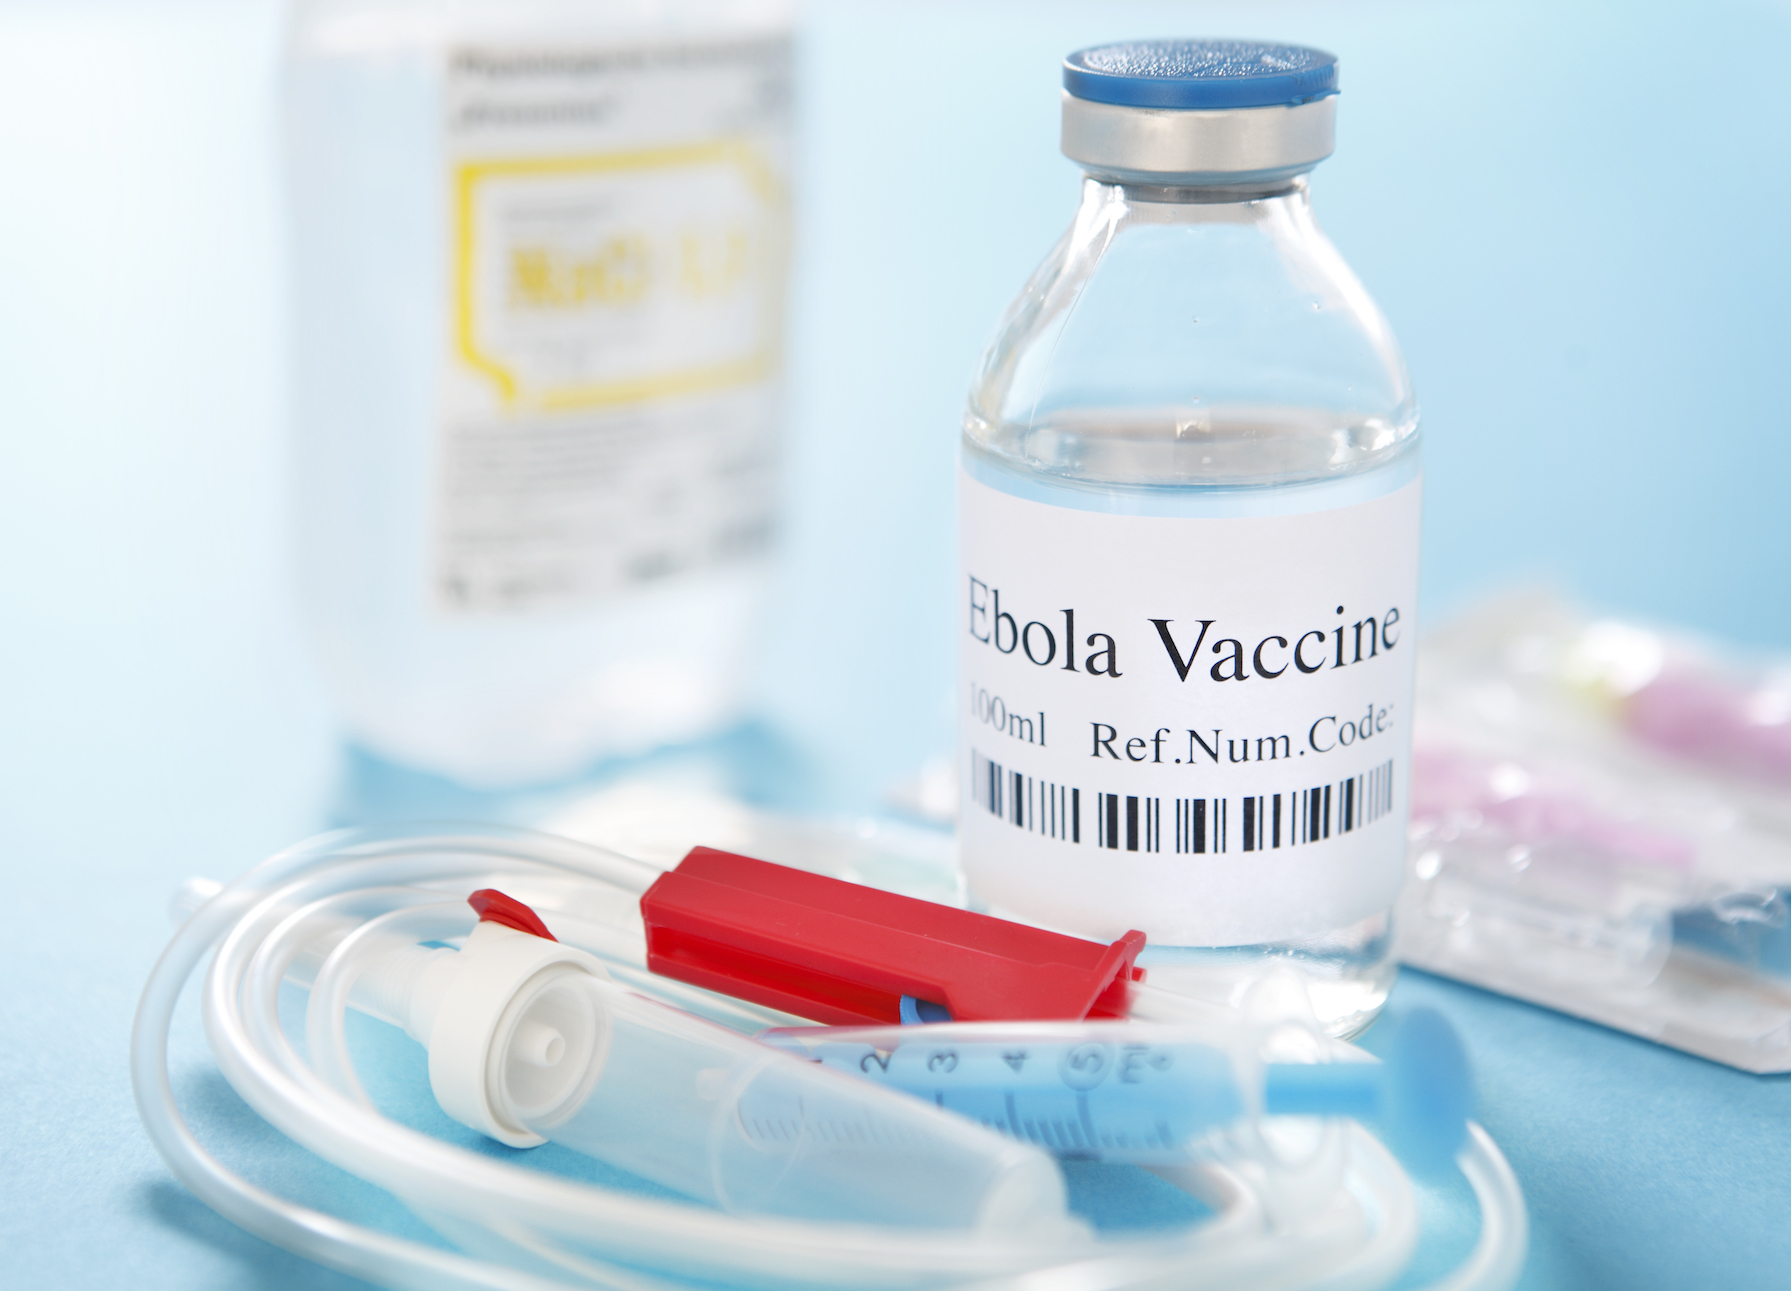 Официально одобрено проведение клинических исследований комбинированной вакцины против Марбурга и Эболы